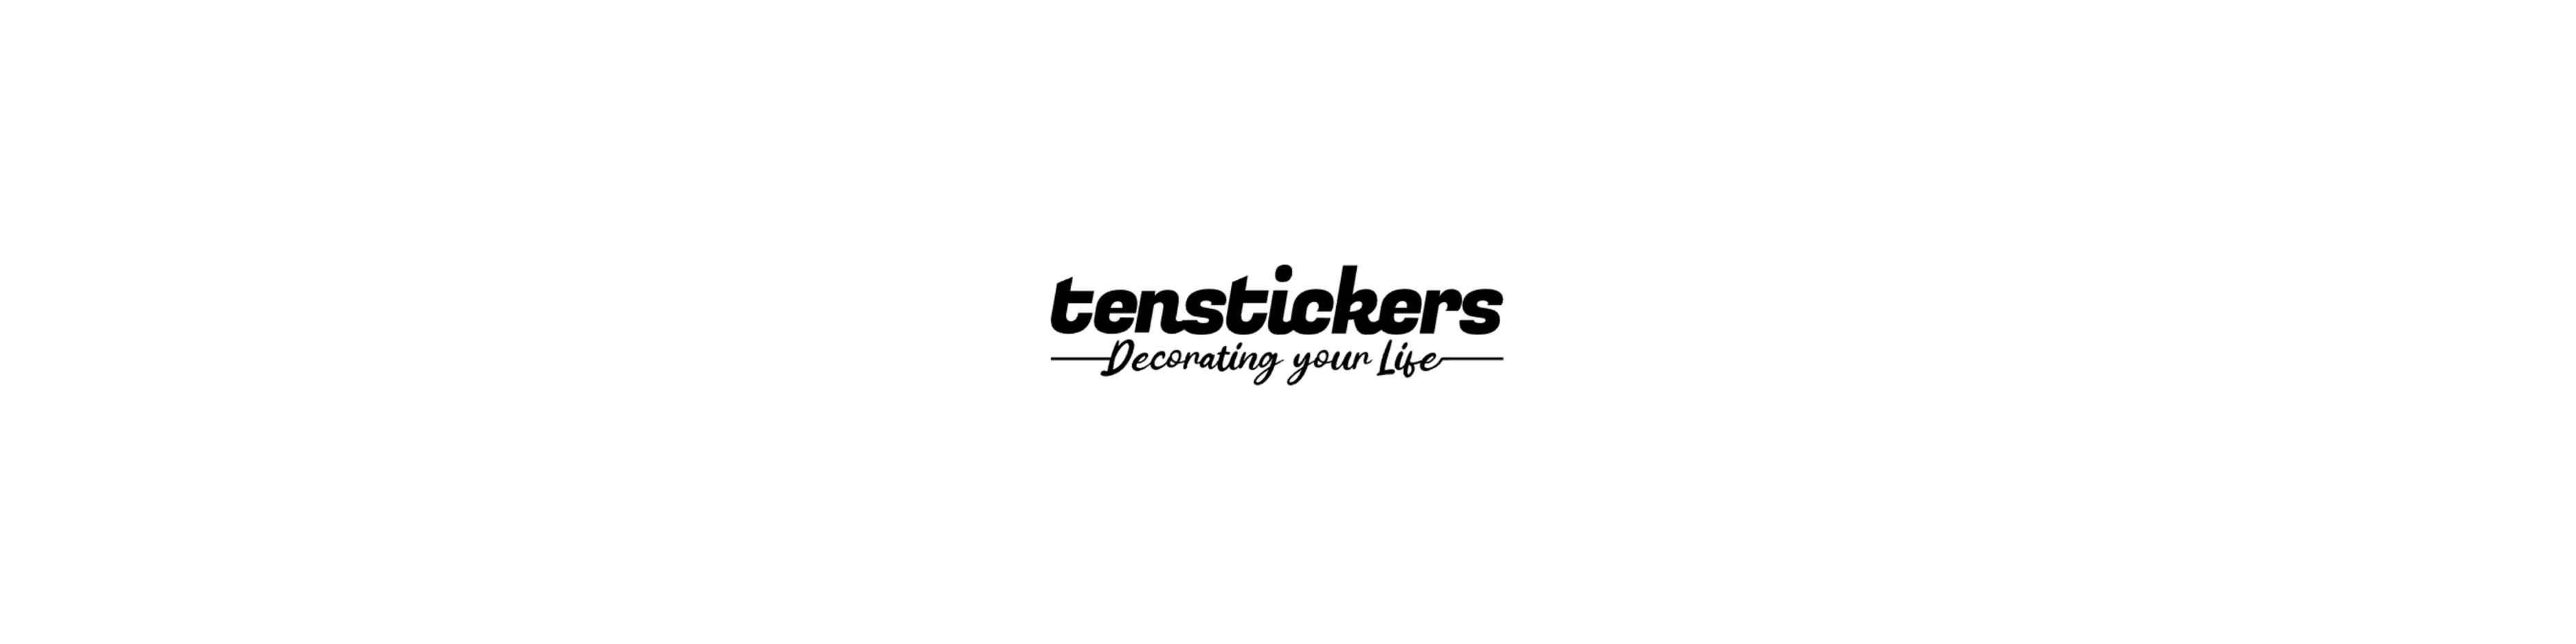 Tenstickers.it (In promozione)